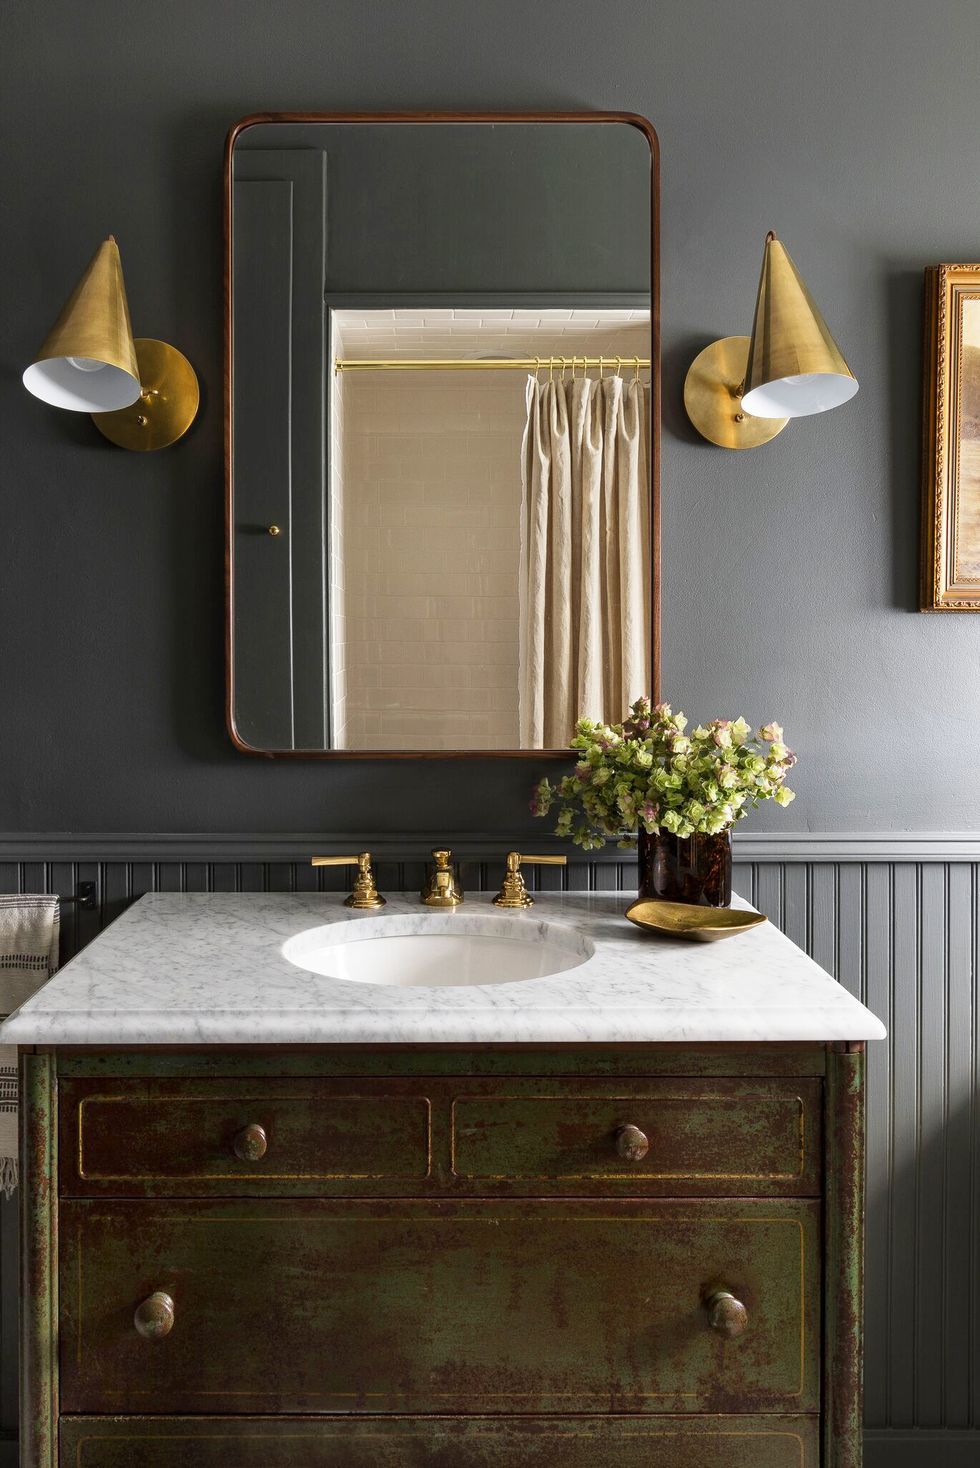 Hình ảnh phòng tắm nhỏ tông màu xám đậm bắt mắt, bề mặt bồn rửa bằng đá cẩm thạch, khung gương lớn, bộ đôi đèn tường kim loại vàng